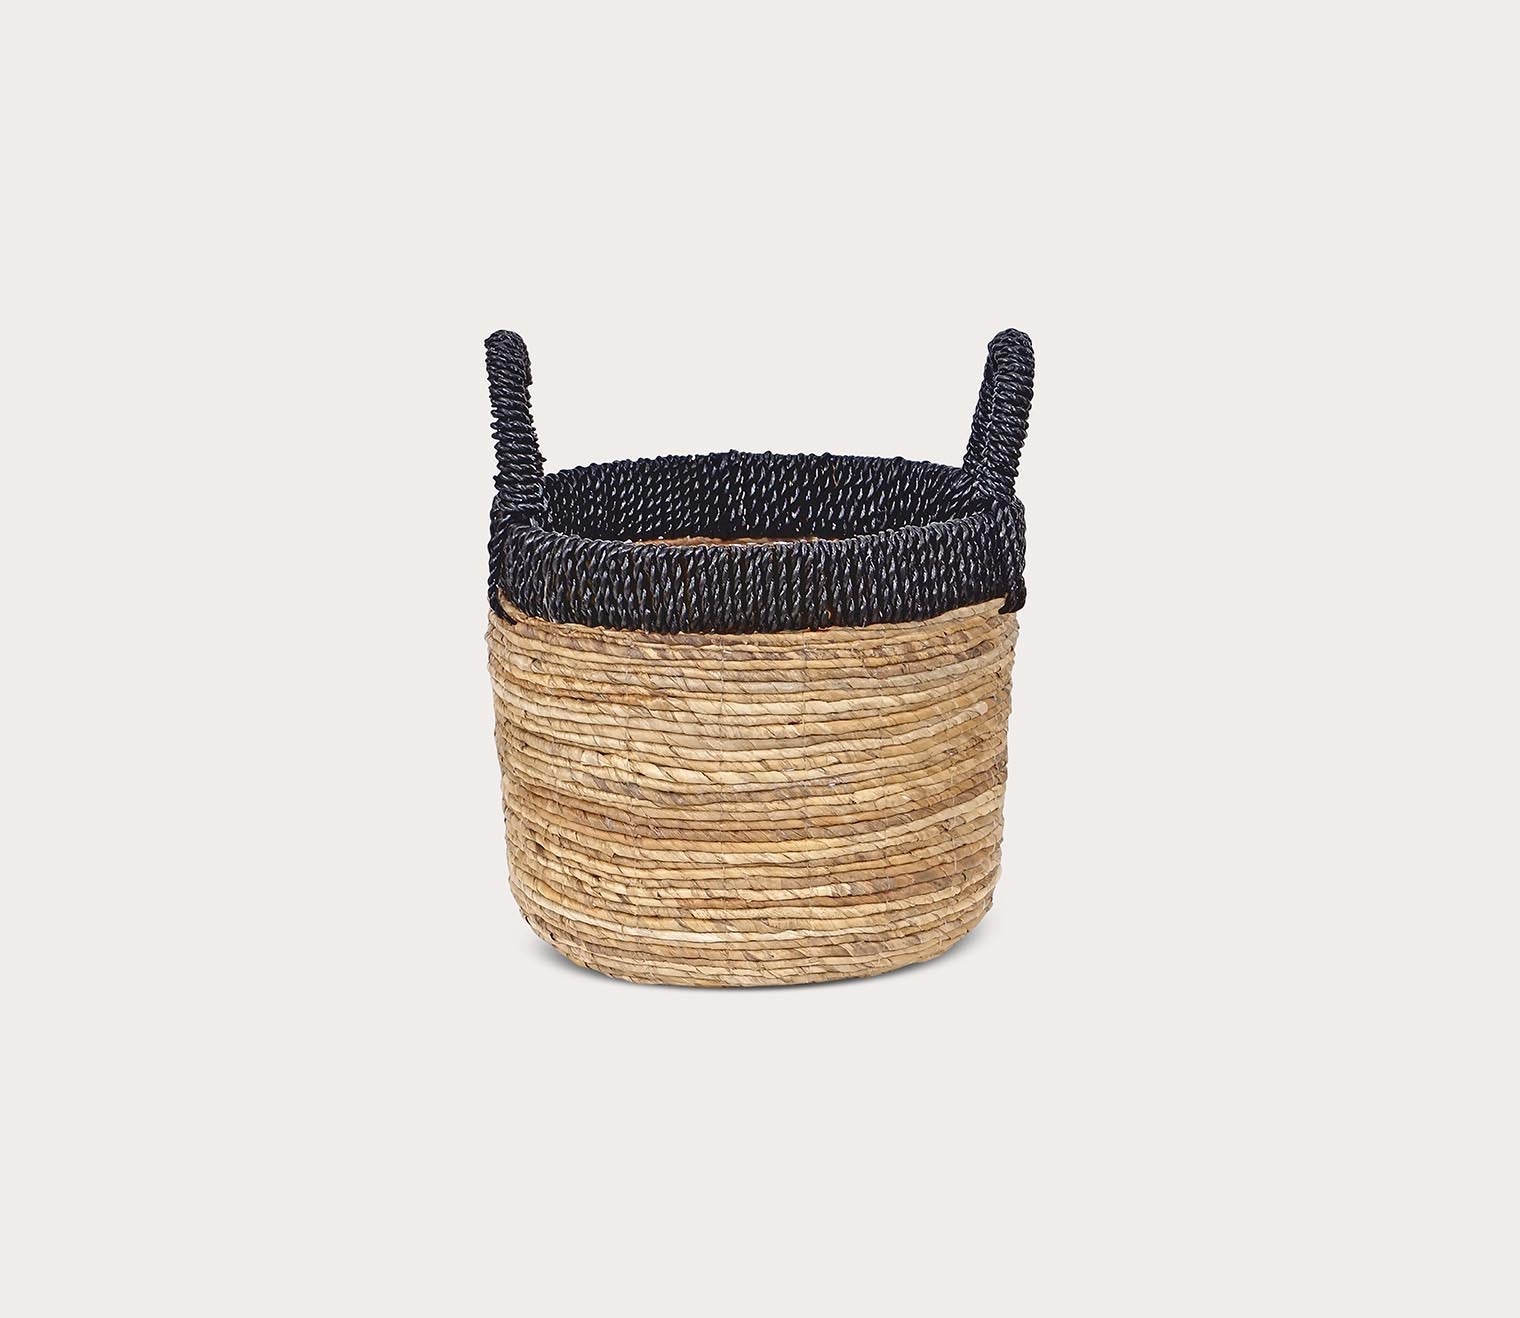 Holset Baskets Set of 3 by Elk Home